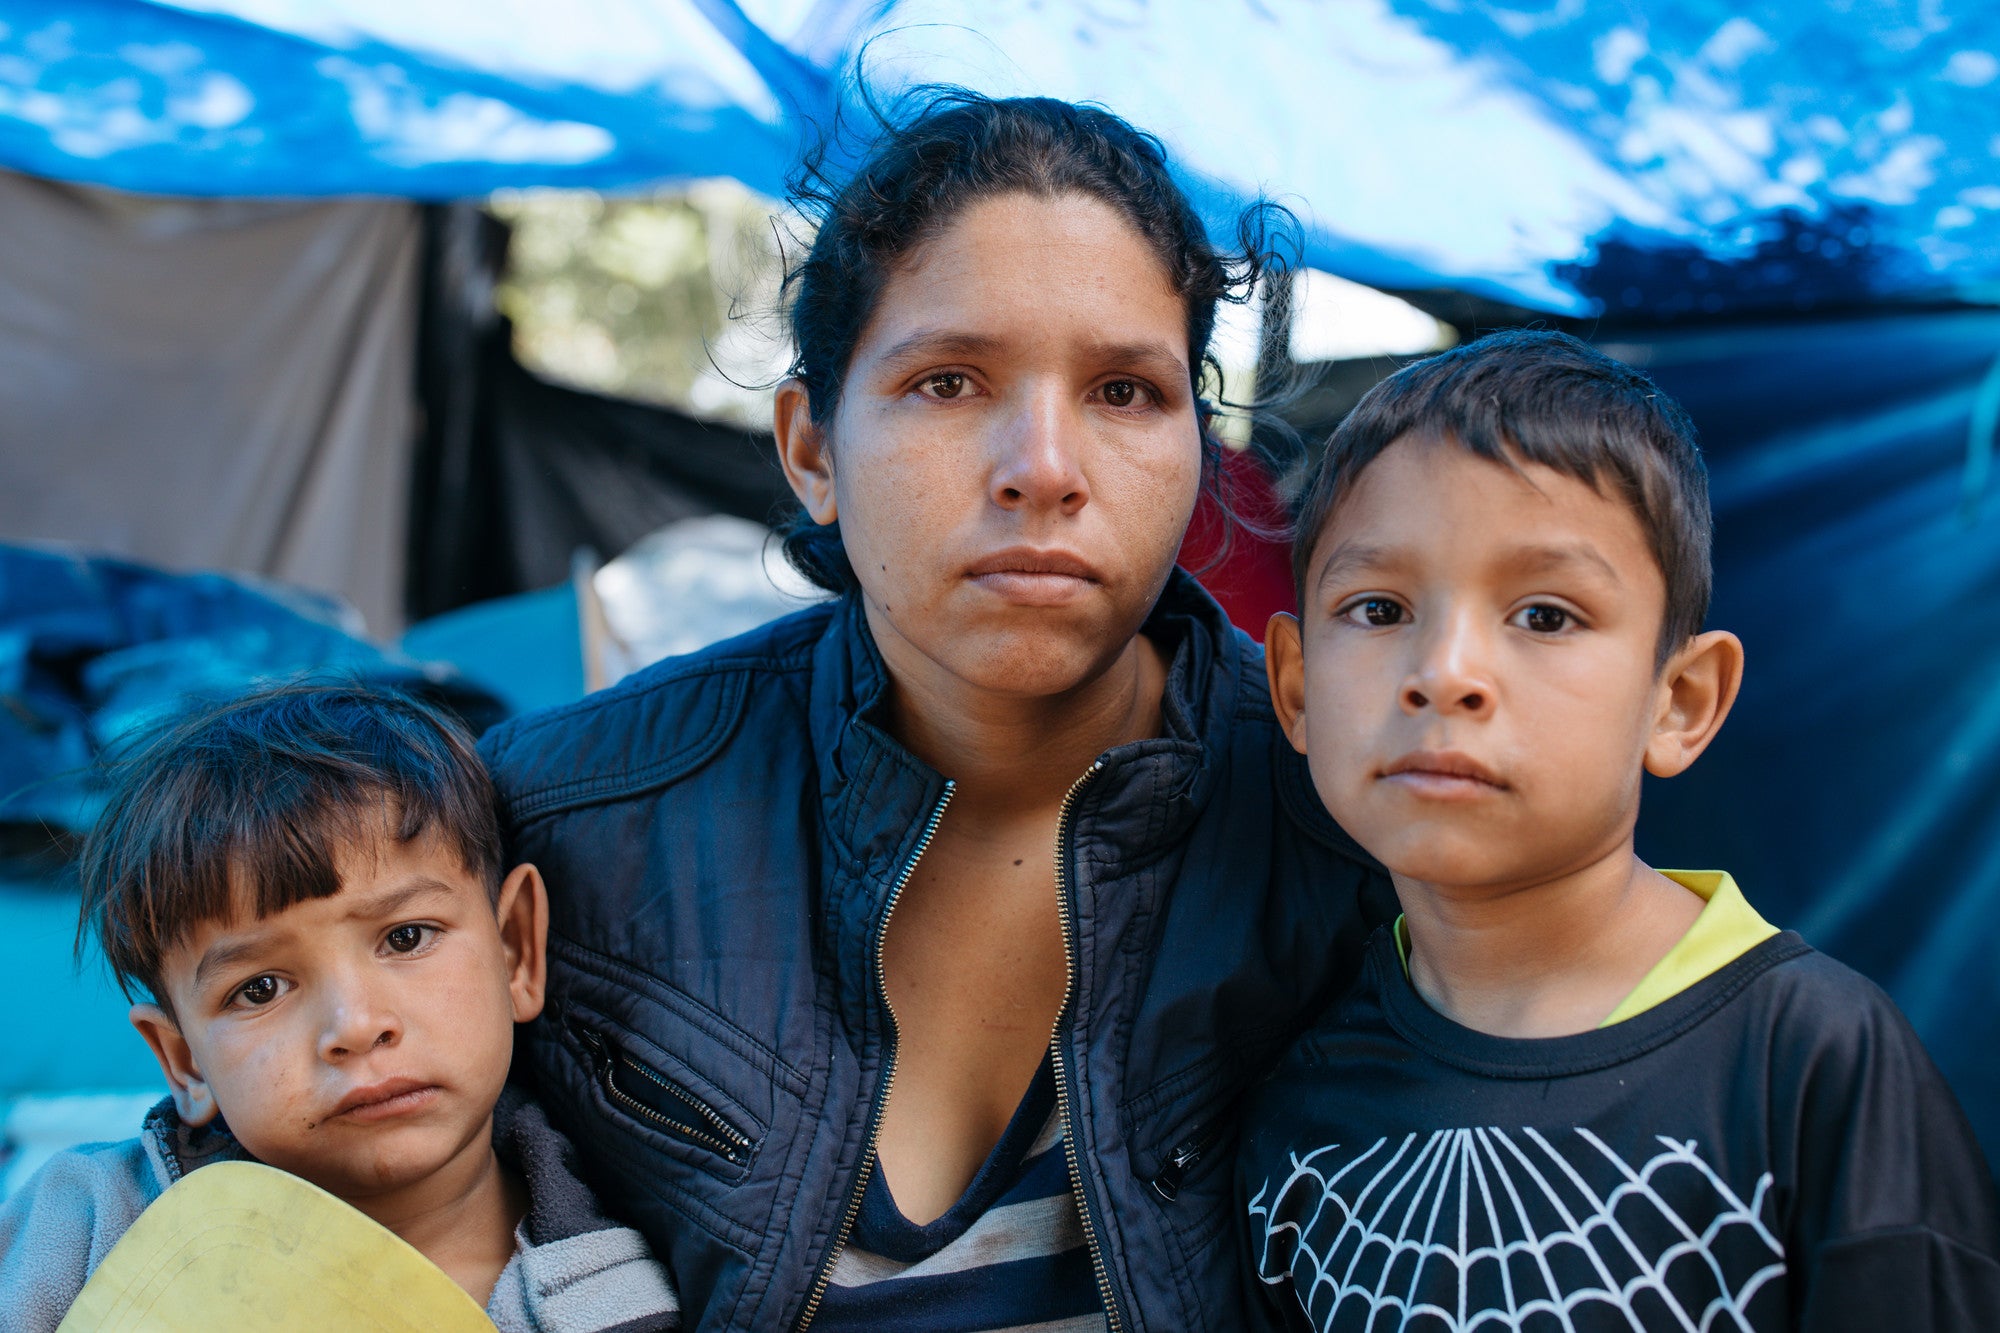 Nazereth Piloira 27 ans, attend près de la gare routière de Carcelen à Quito près du campement informel de tentes avec ses enfants en attente de dons alimentaires publics